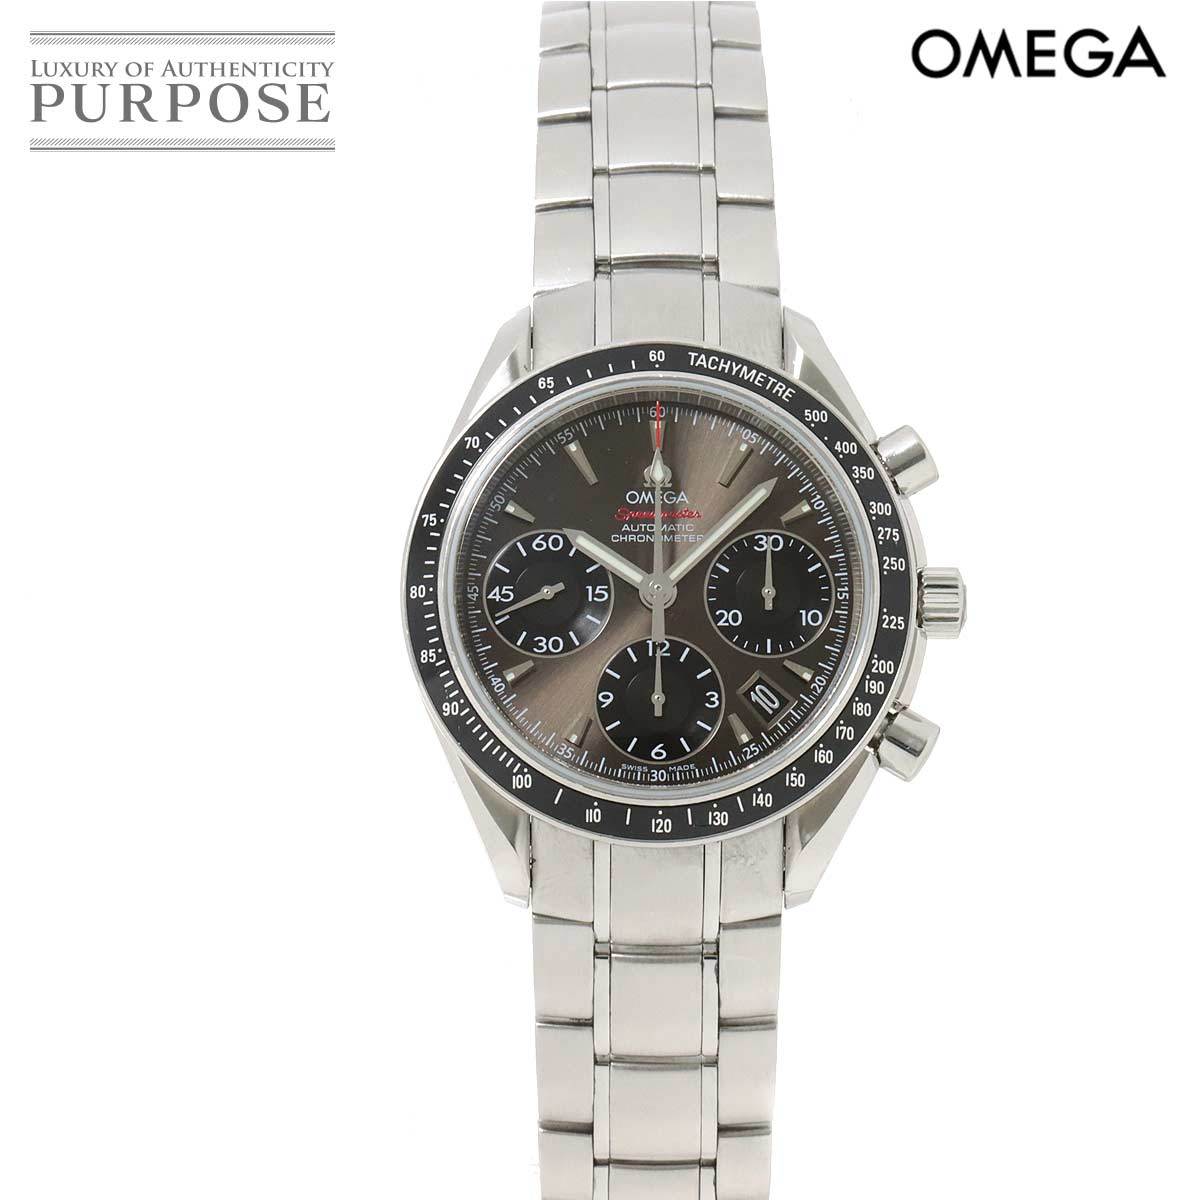 オメガ OMEGA スピードマスター デイト 323 30 40 40 06 001 クロノグラフ メンズ 腕時計 グレー 文字盤 自動巻き Speedmaster 90196796